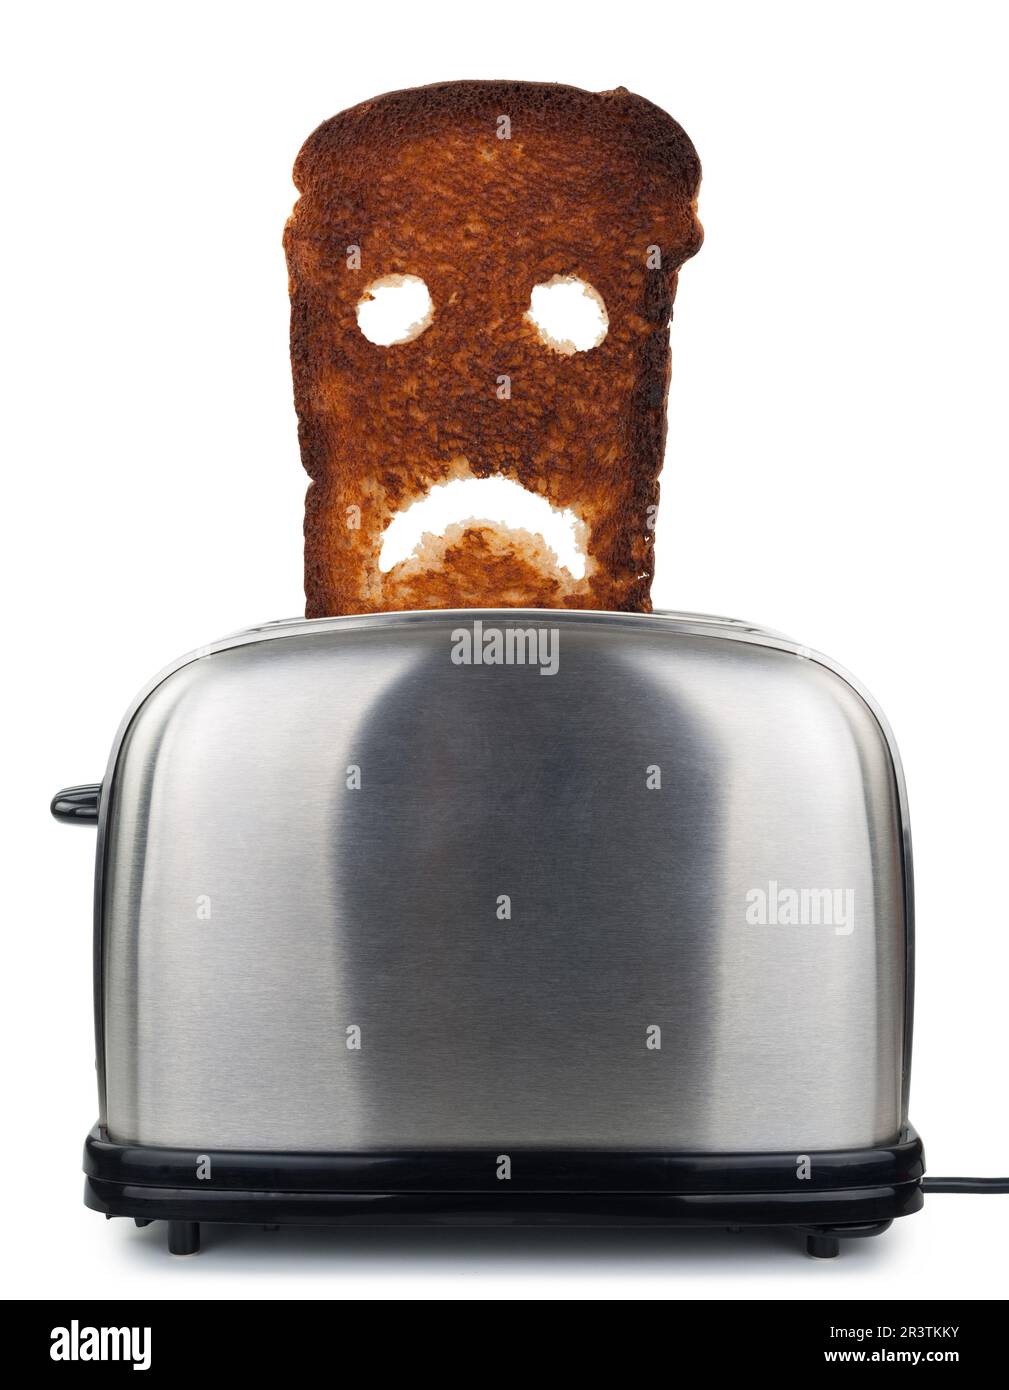 Pan tostado quemado en una tostadora Fotografía de stock - Alamy